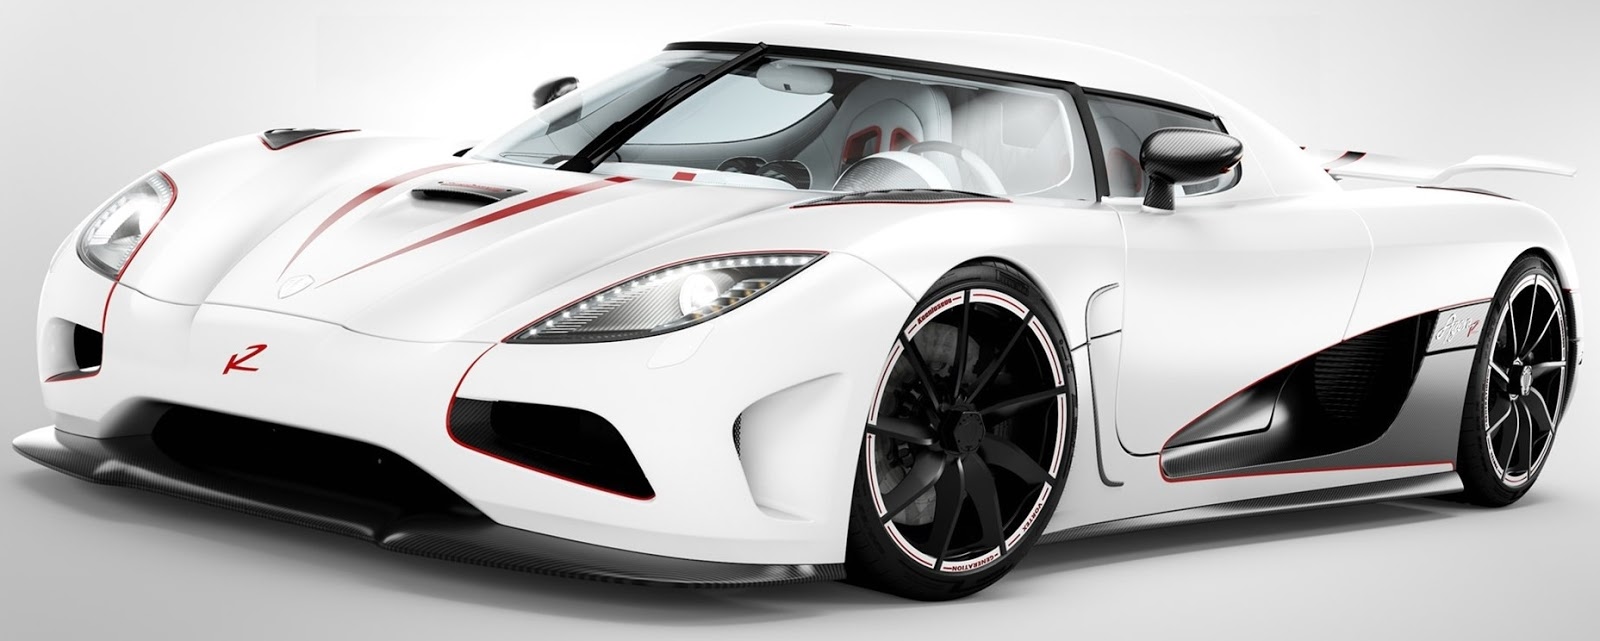  Gambar  Mobil  Sport Warna  Putih  Terbaru Sobat Modifikasi